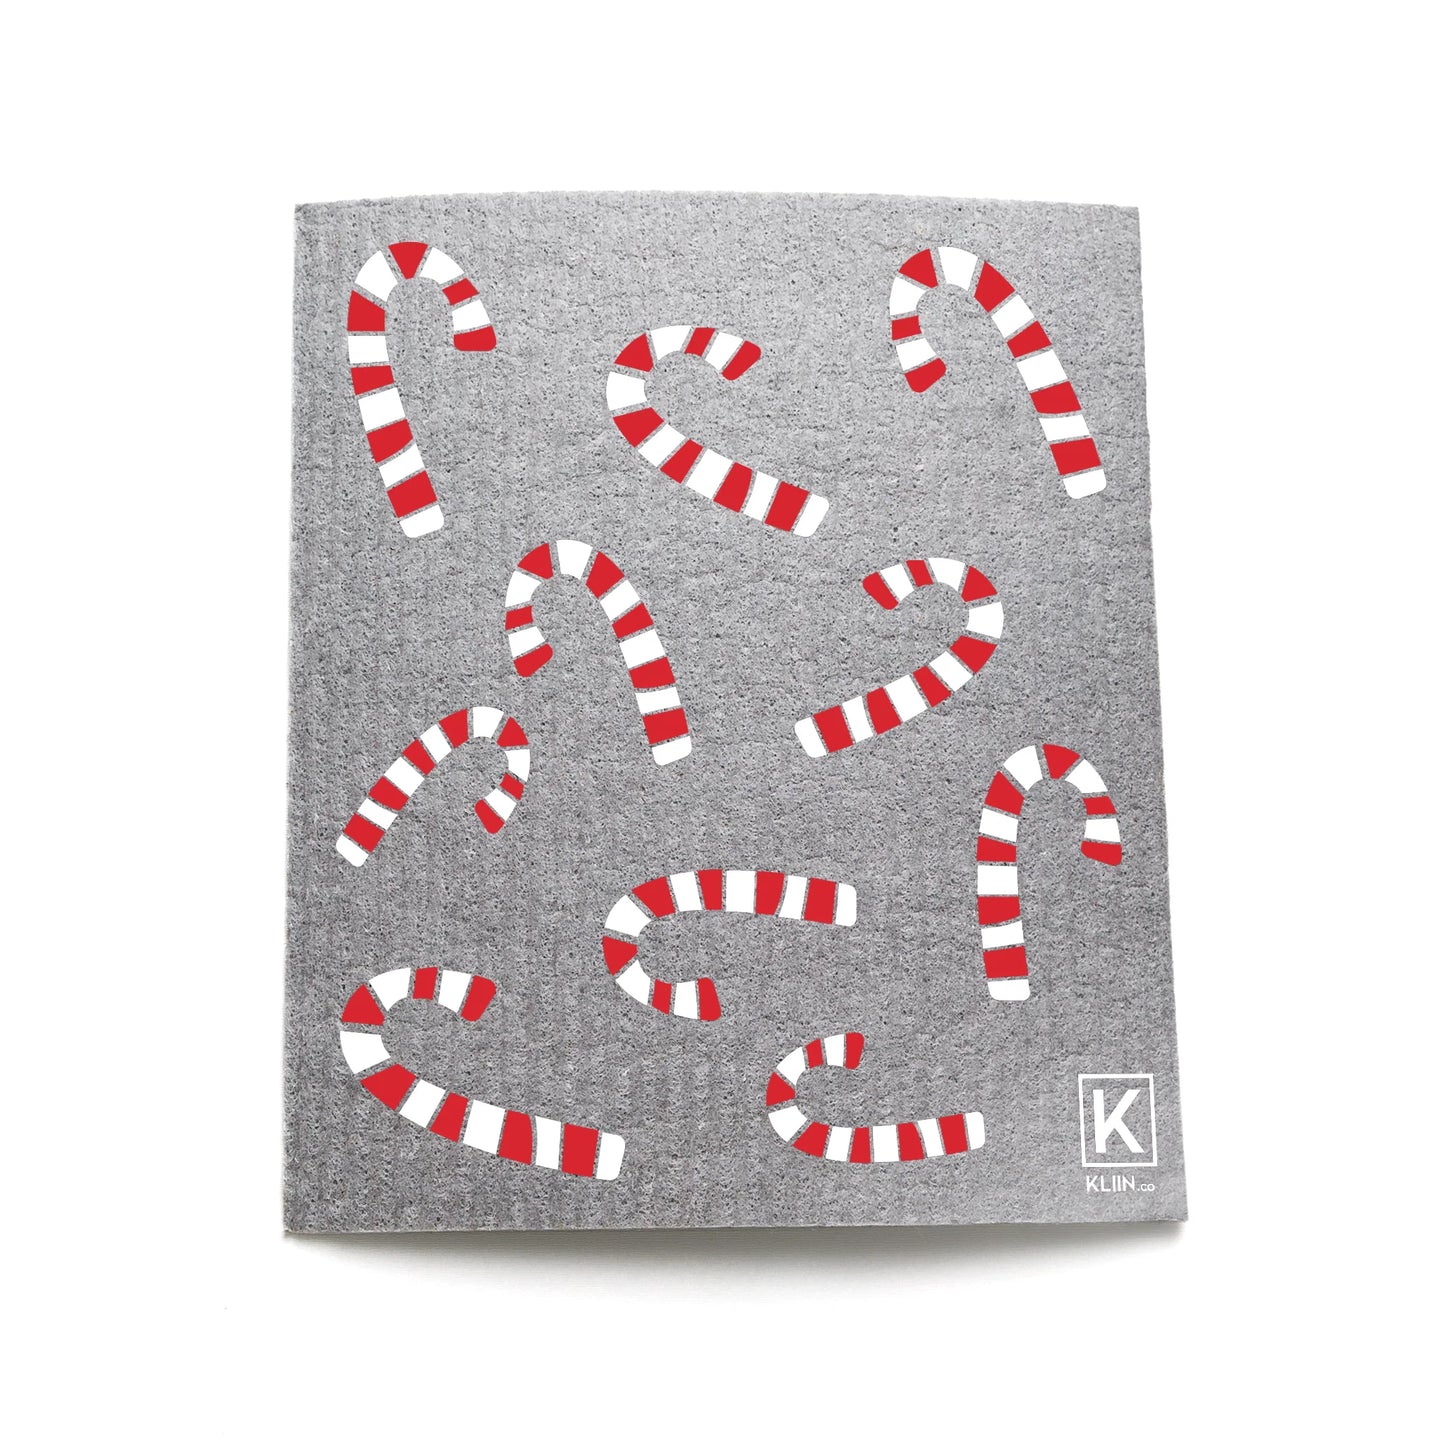 Small Reusable sponge cloth by KLIIN - Christmas editions